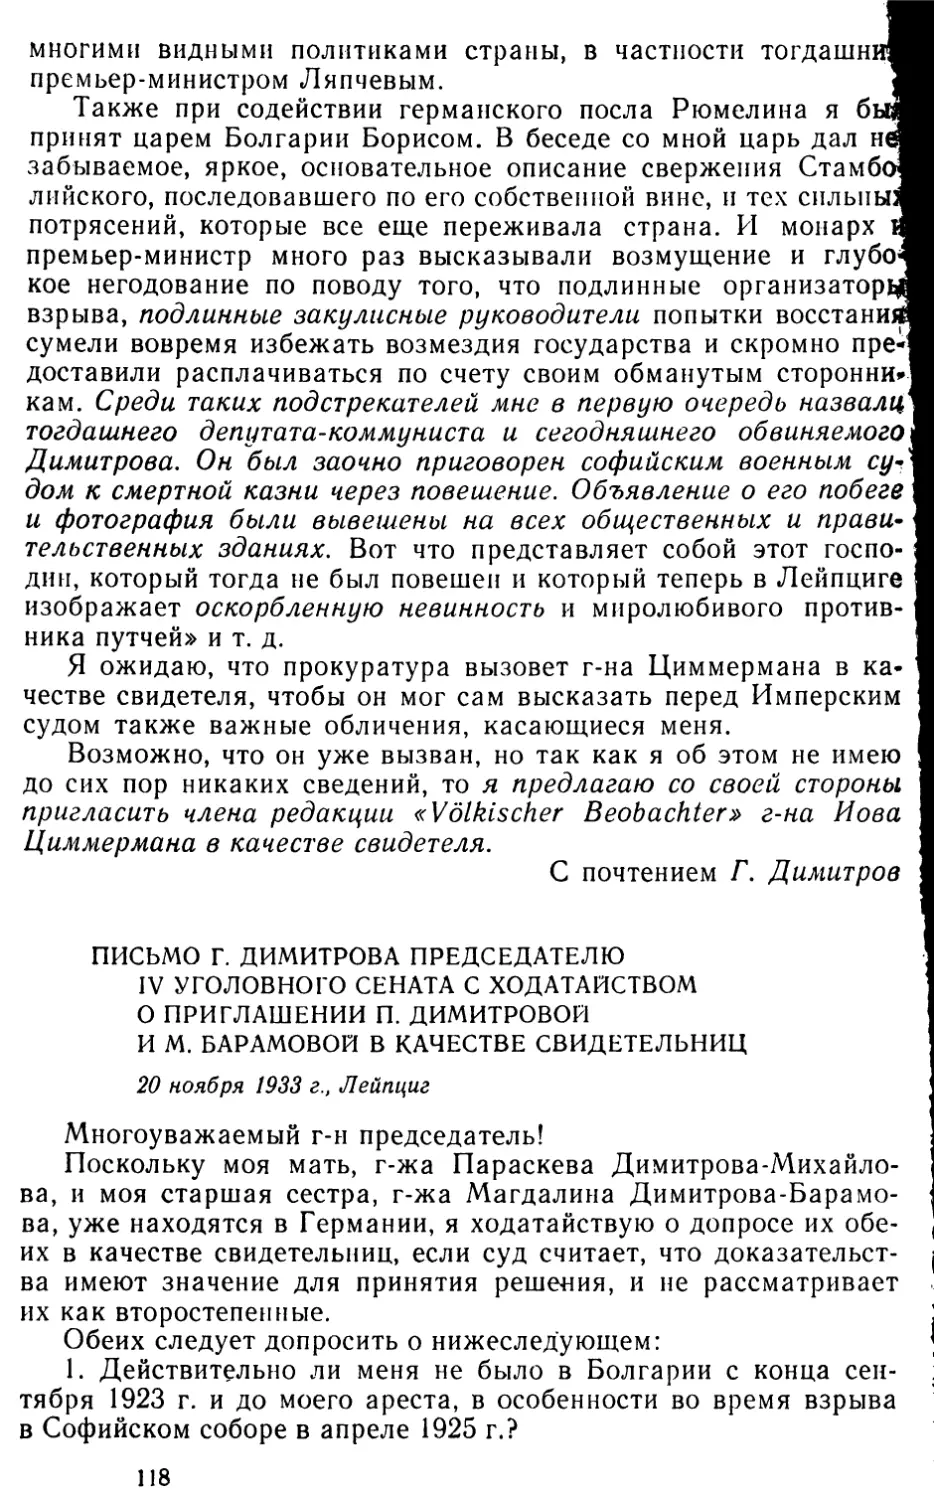 Письмо Г. Димитрова председателю IV уголовного сената с ходатайством о приглашении П. Димитровой и М. Барамовой в качестве свидетельниц. 20 ноября 1933 г